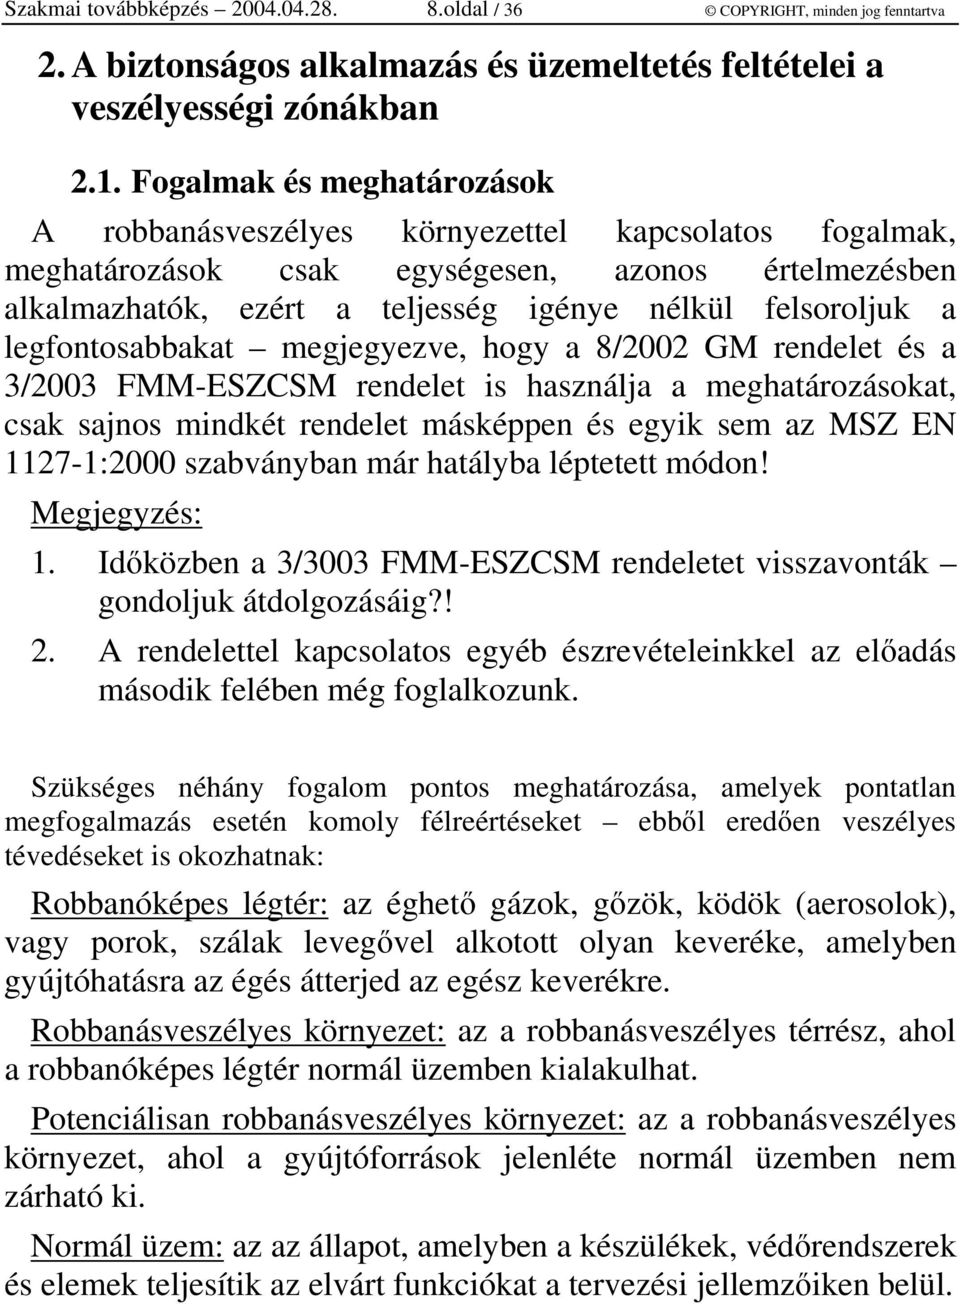 legfontosabbakat megjegyezve, hogy a 8/2002 GM rendelet és a 3/2003 FMM-ESZCSM rendelet is használja a meghatározásokat, csak sajnos mindkét rendelet másképpen és egyik sem az MSZ EN 1127-1:2000